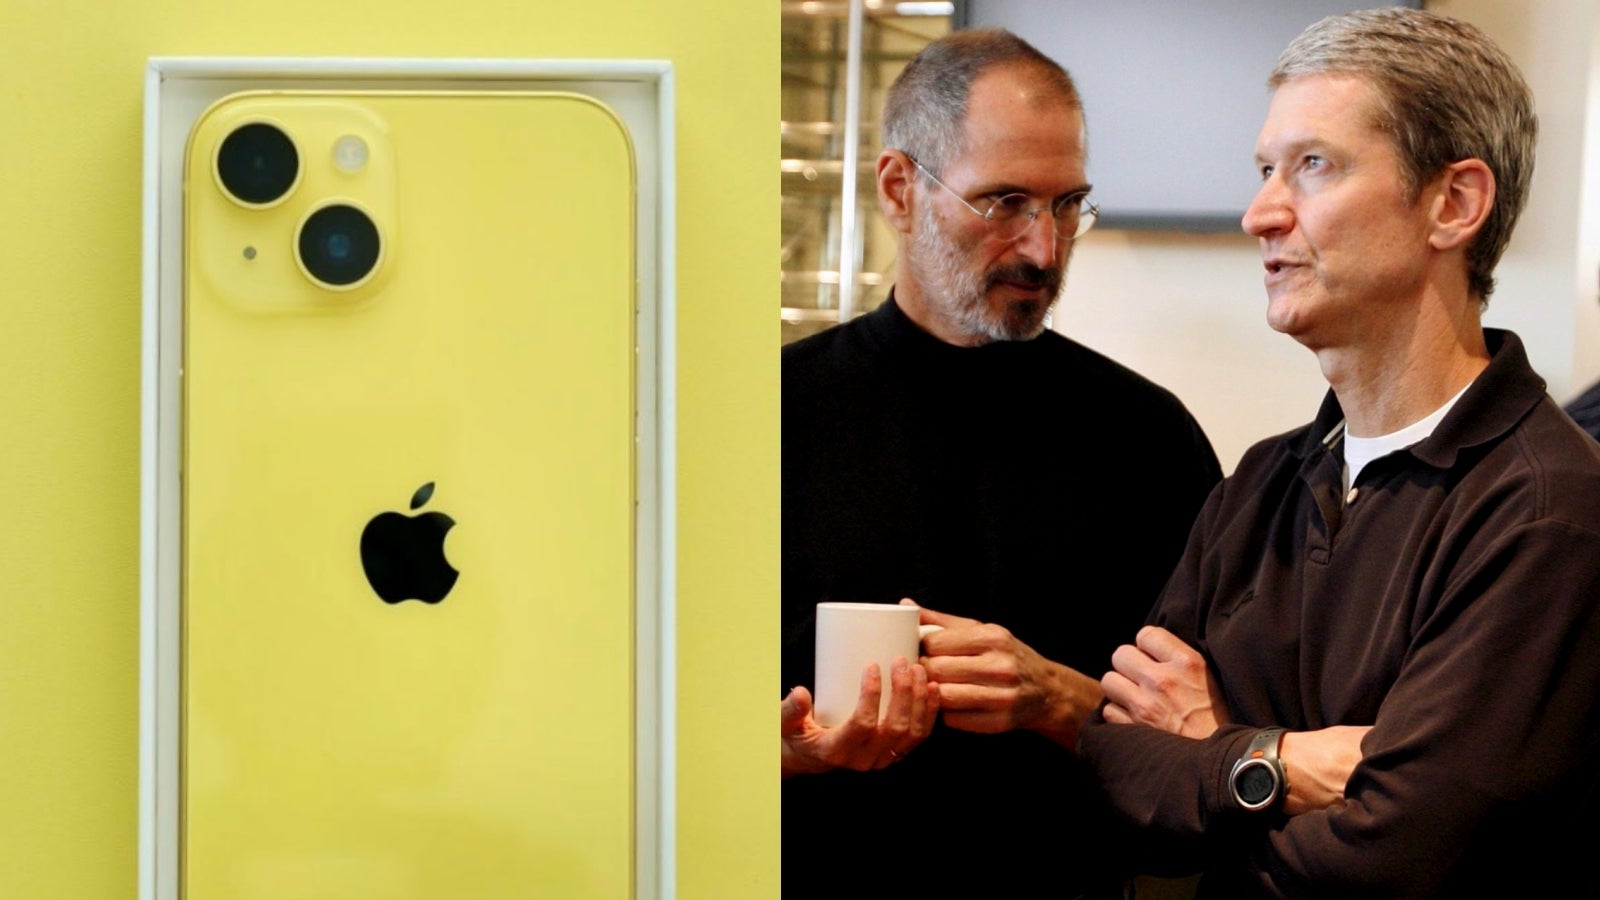 Steve Jobs était un visionnaire, mais Tim Cook a propulsé Apple vers de nouveaux sommets (économiques).  - 30 millions de personnes ont acheté « le pire iPhone de tous les temps » : l'influence culte d'Apple sur le marché de la téléphonie